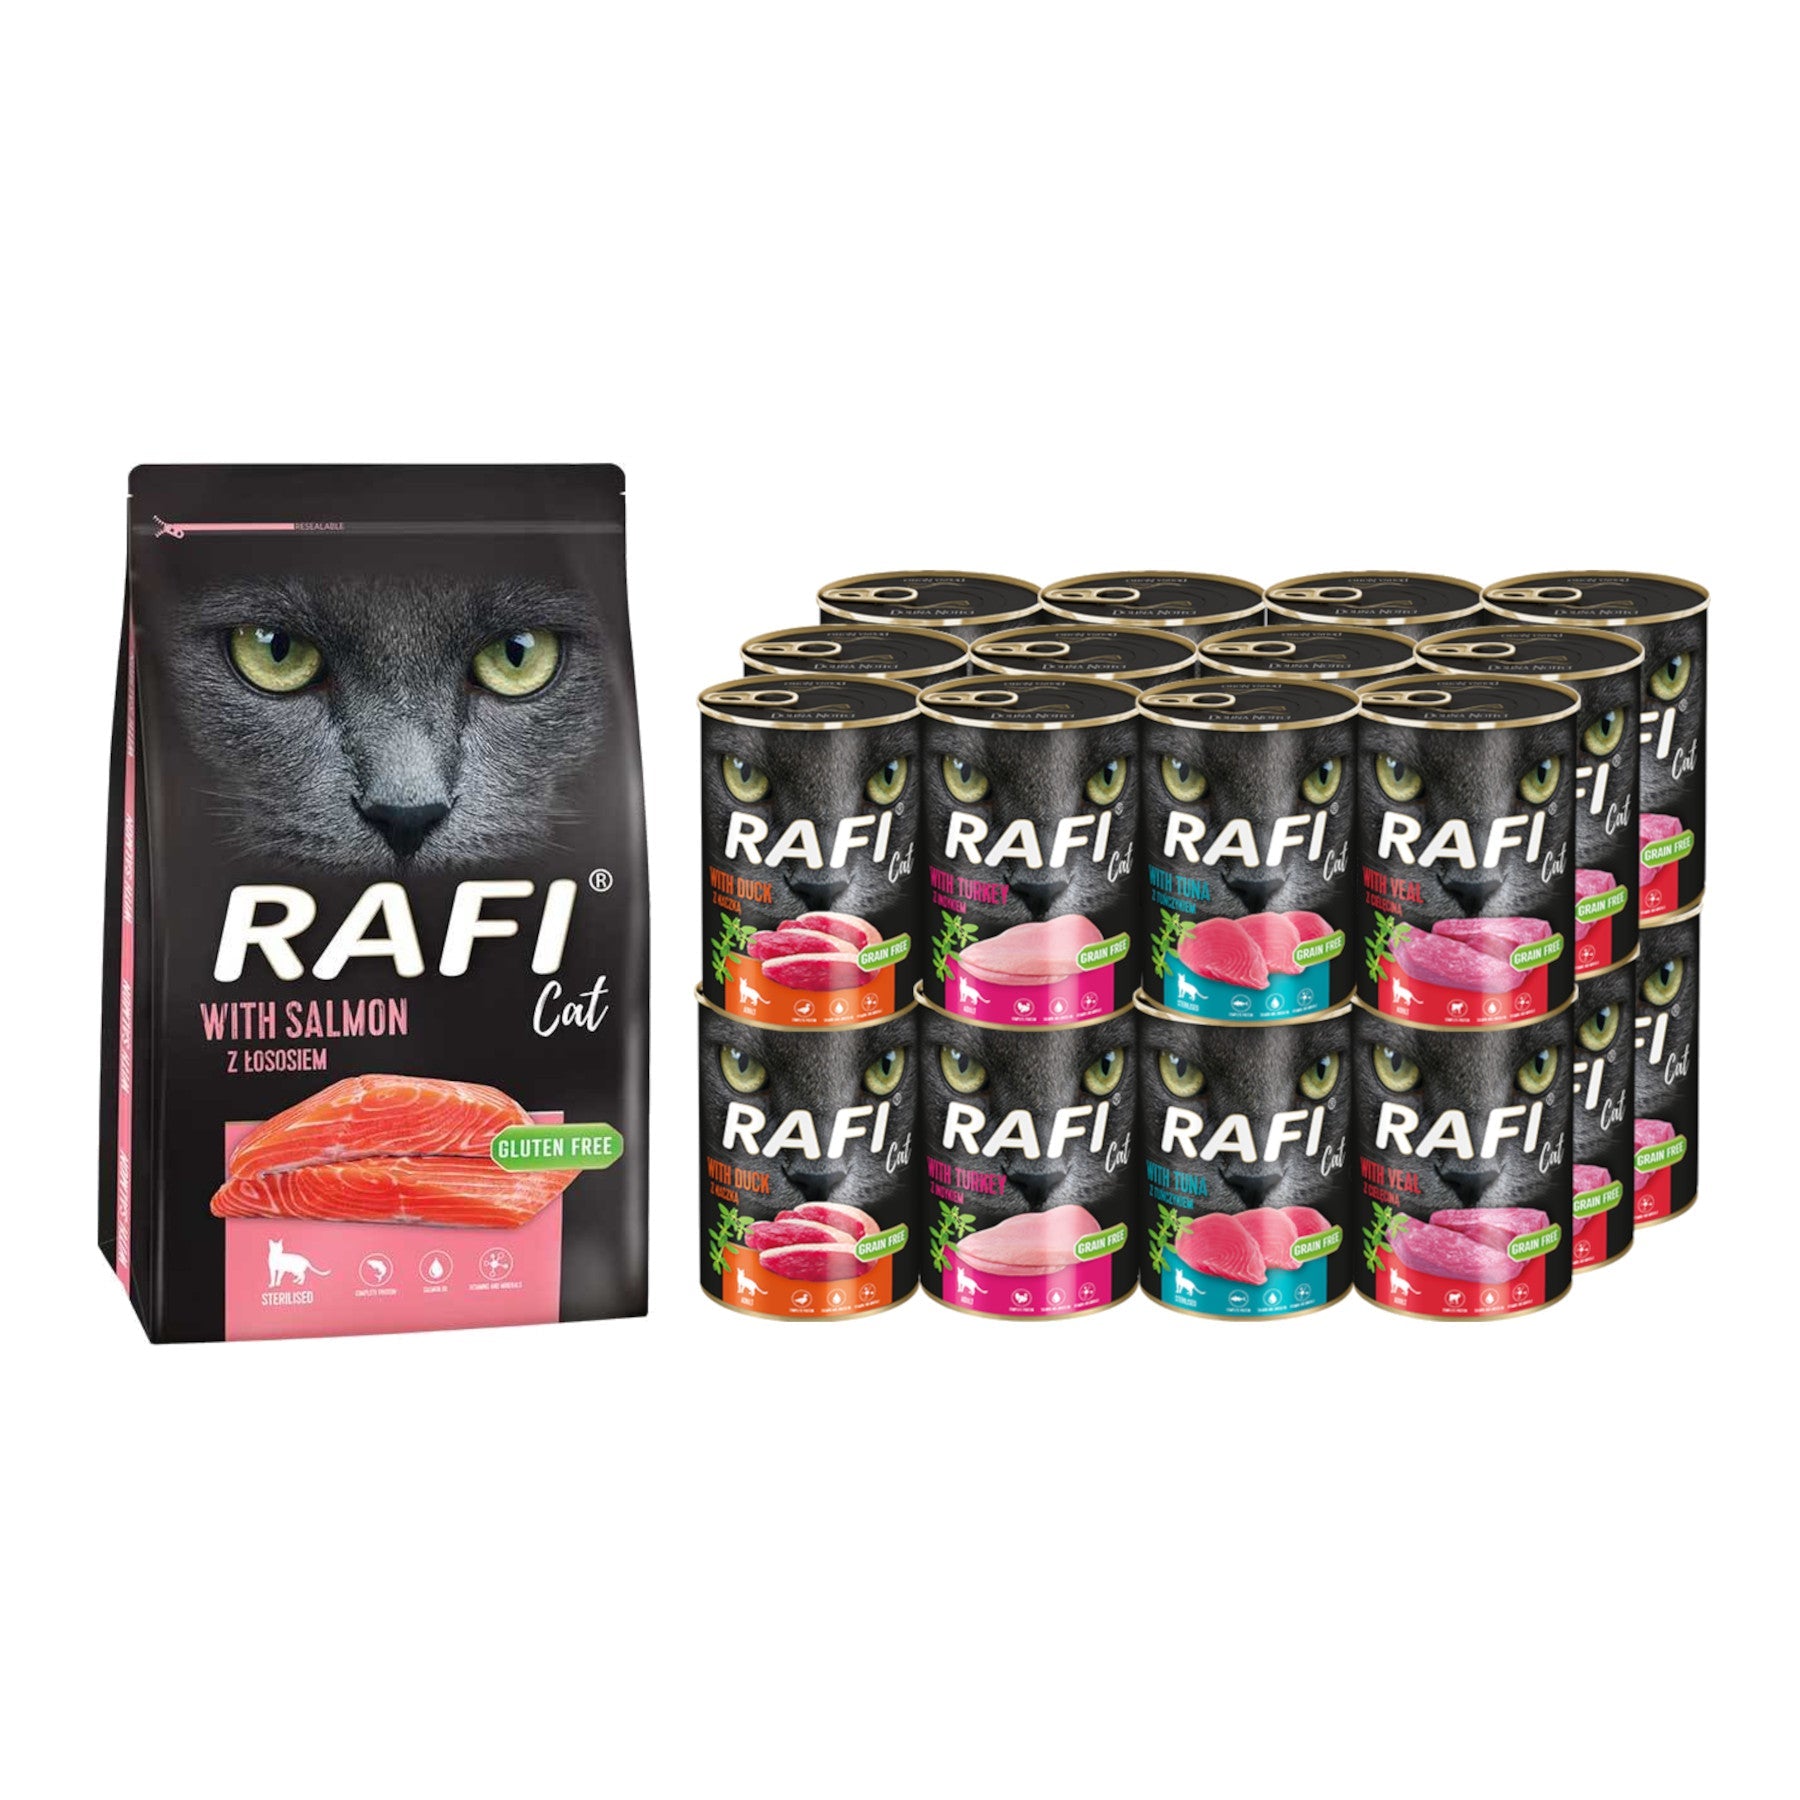 Zestaw karmy dla kota Rafi mix puszka 400 g x24 + worek 1,5 łosoś